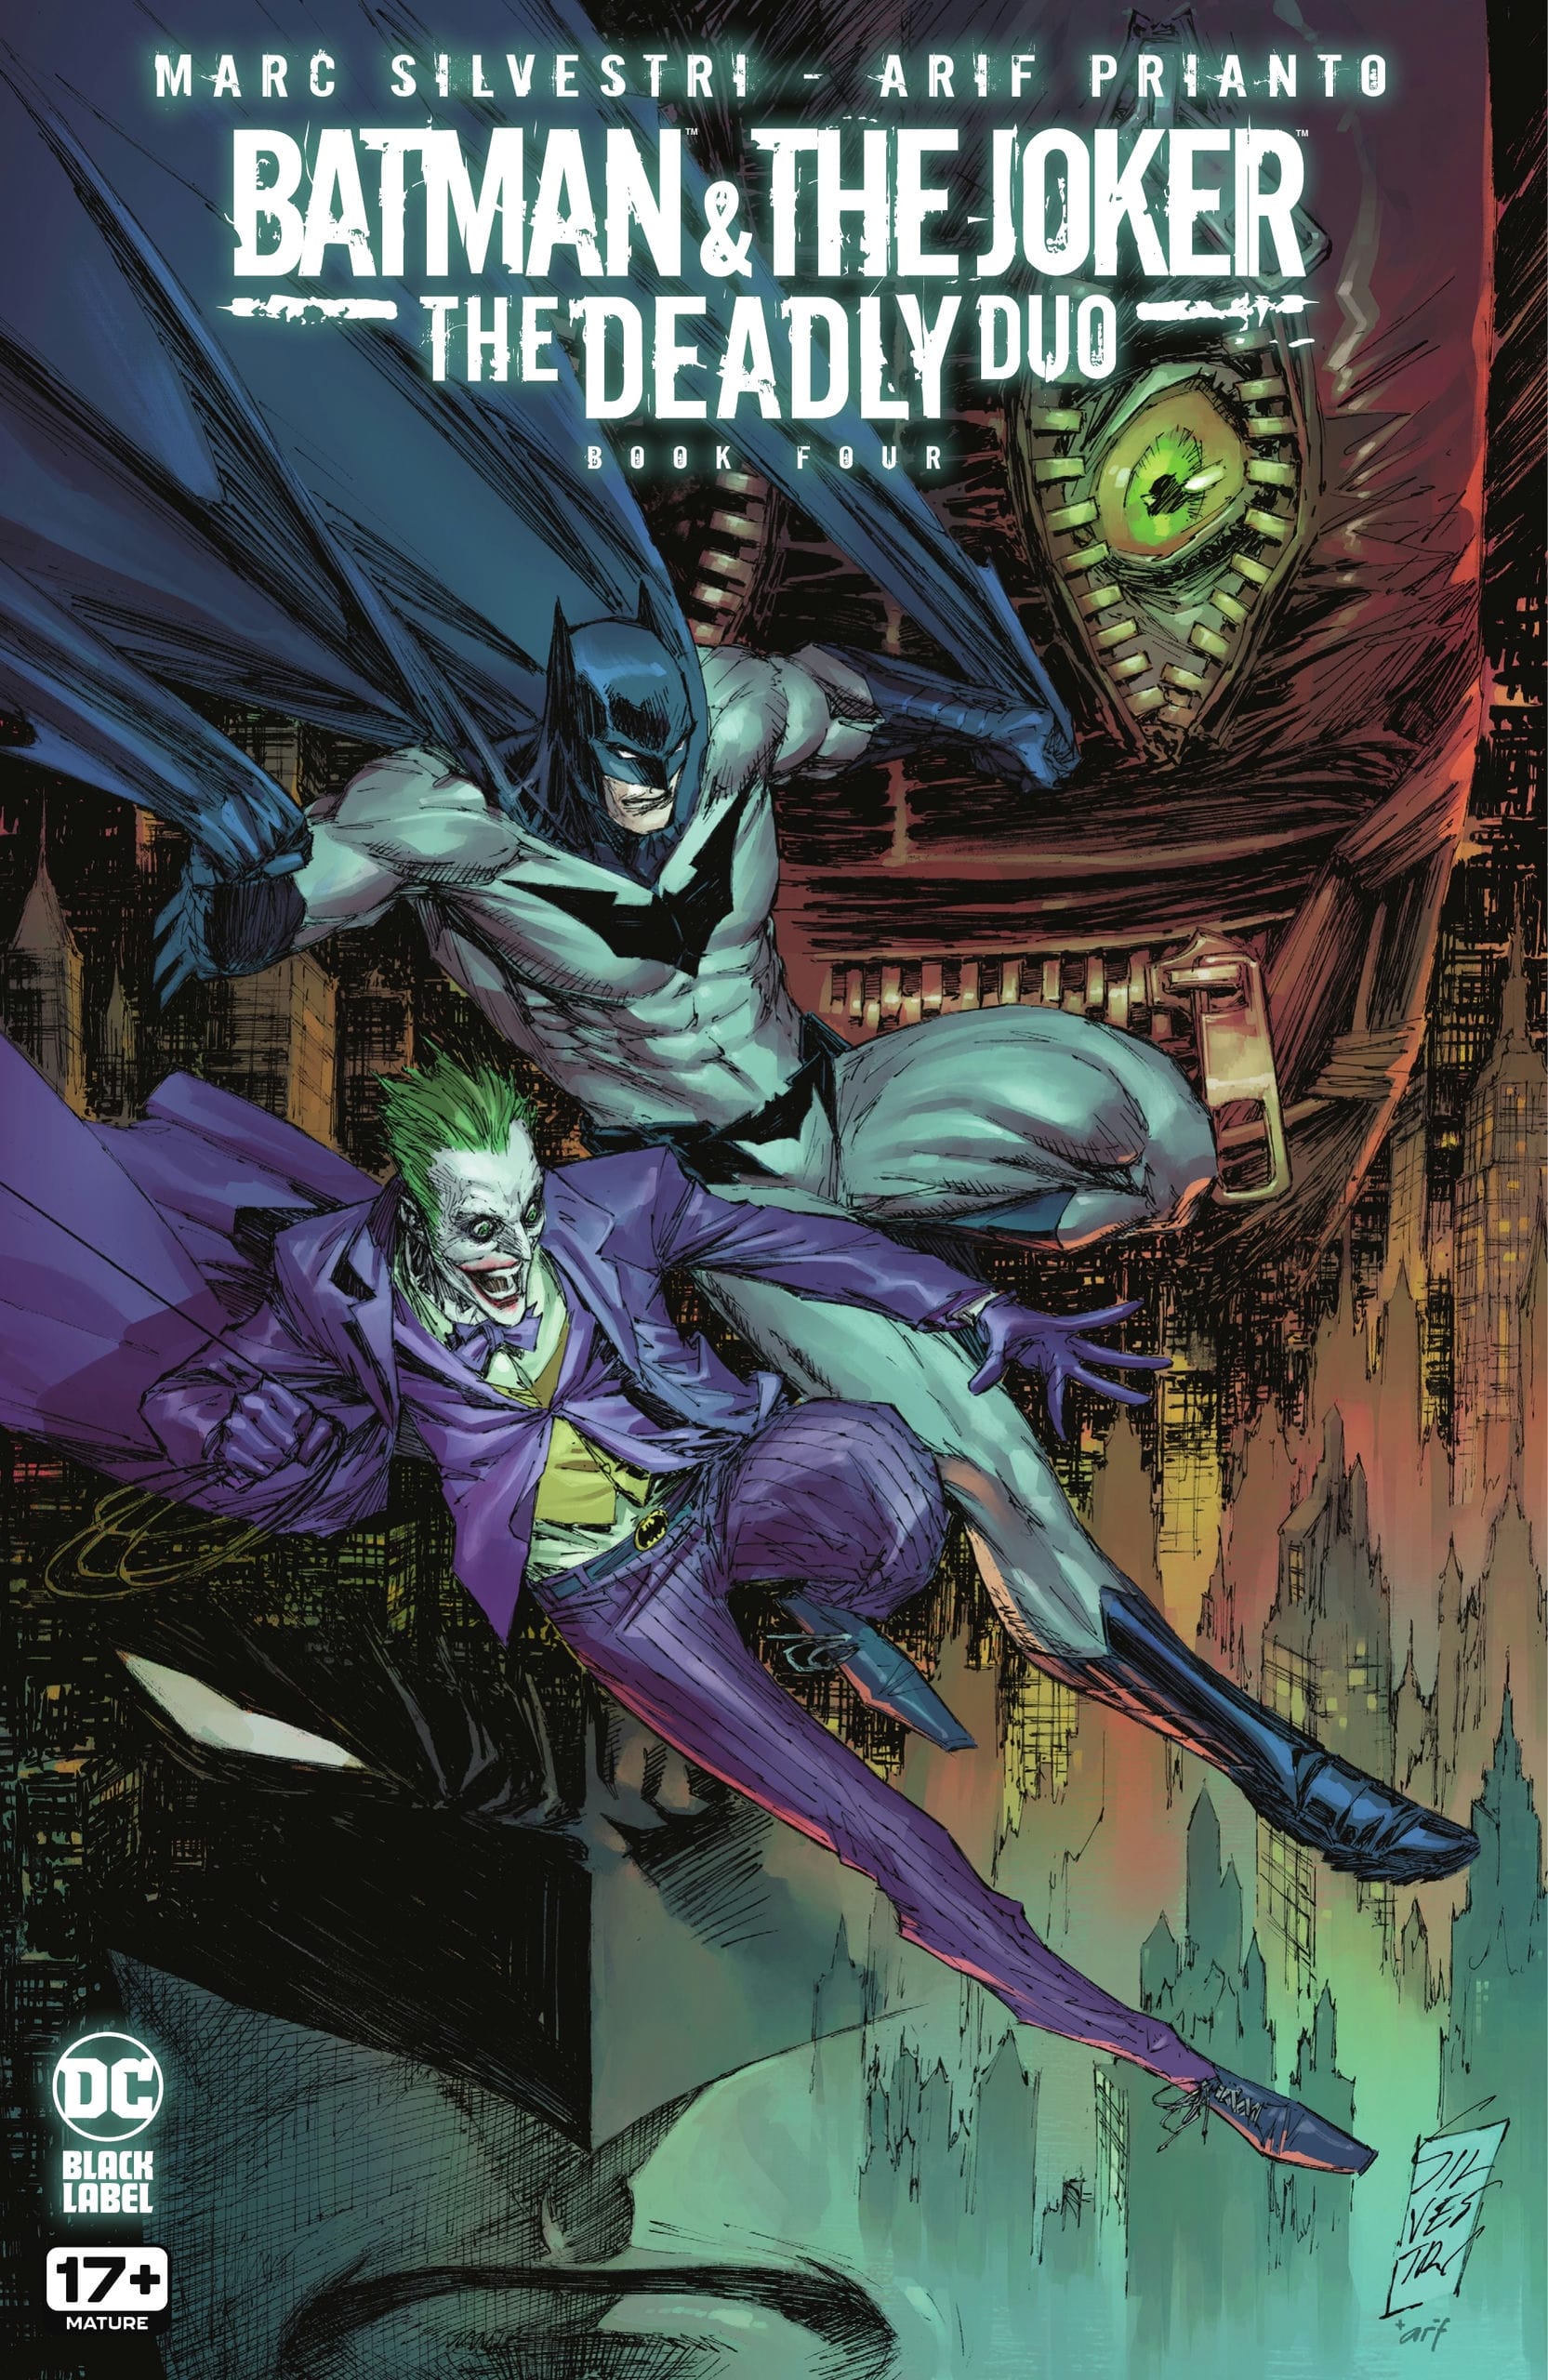 https://langgeek.net/wp-content/webpc-passthru.php?src=https://langgeek.net/wp-content/uploads/2023/02/Batman-The-Joker-The-Deadly-Duo-2022-004-000.jpg&nocache=1